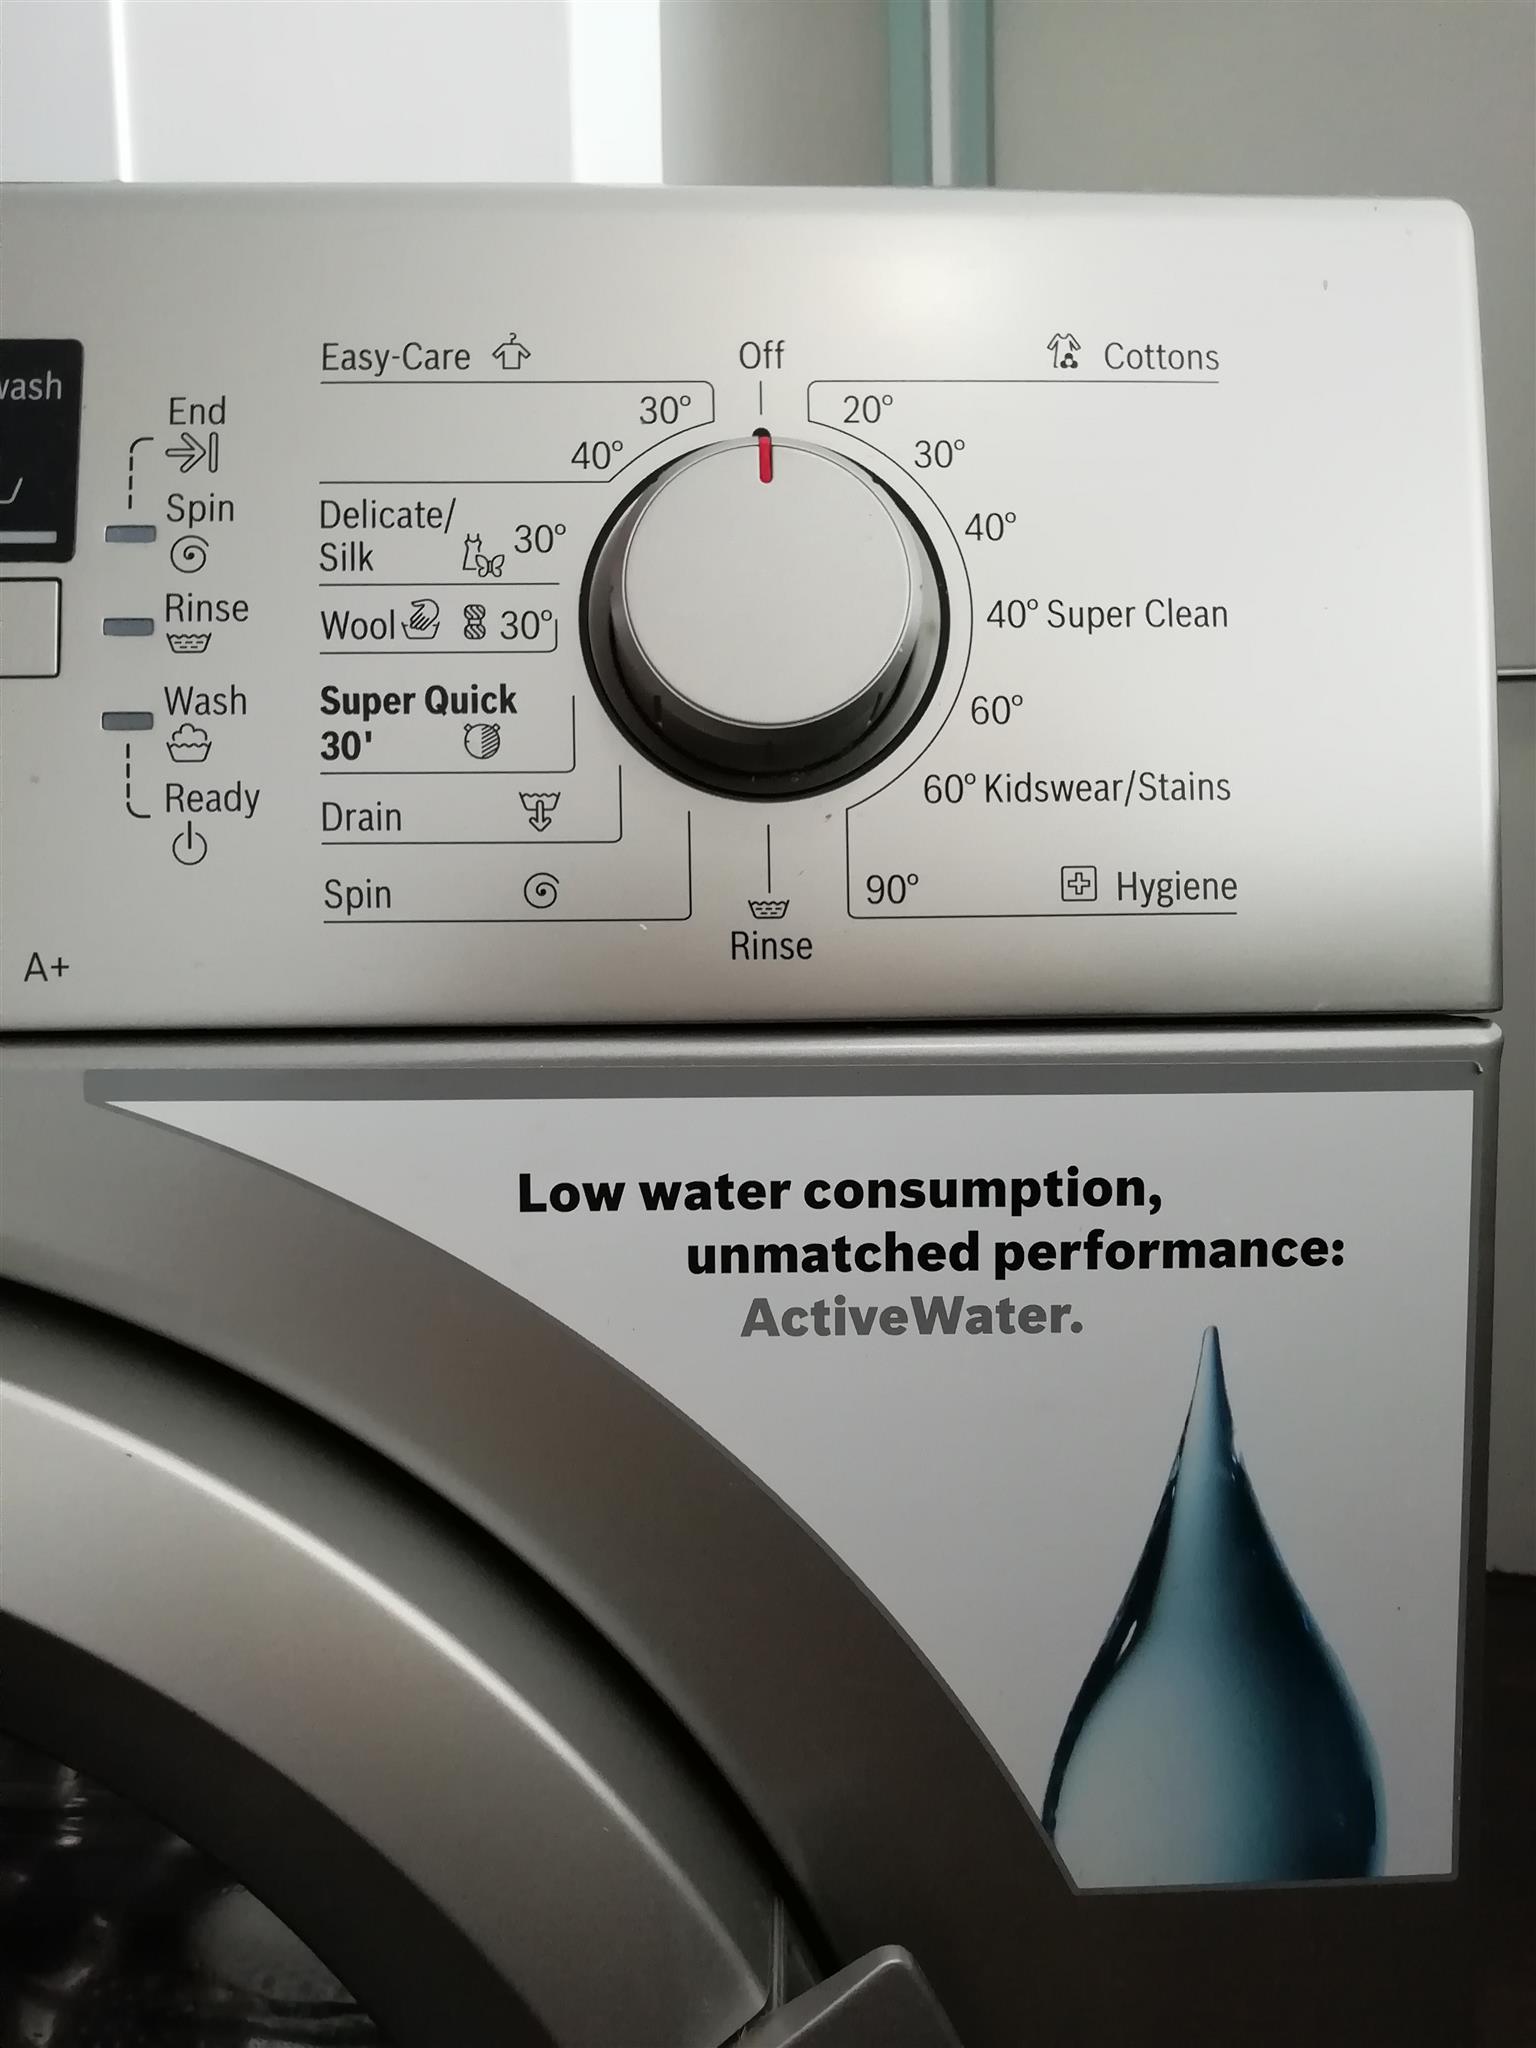 Bosch front-loader washing machine 